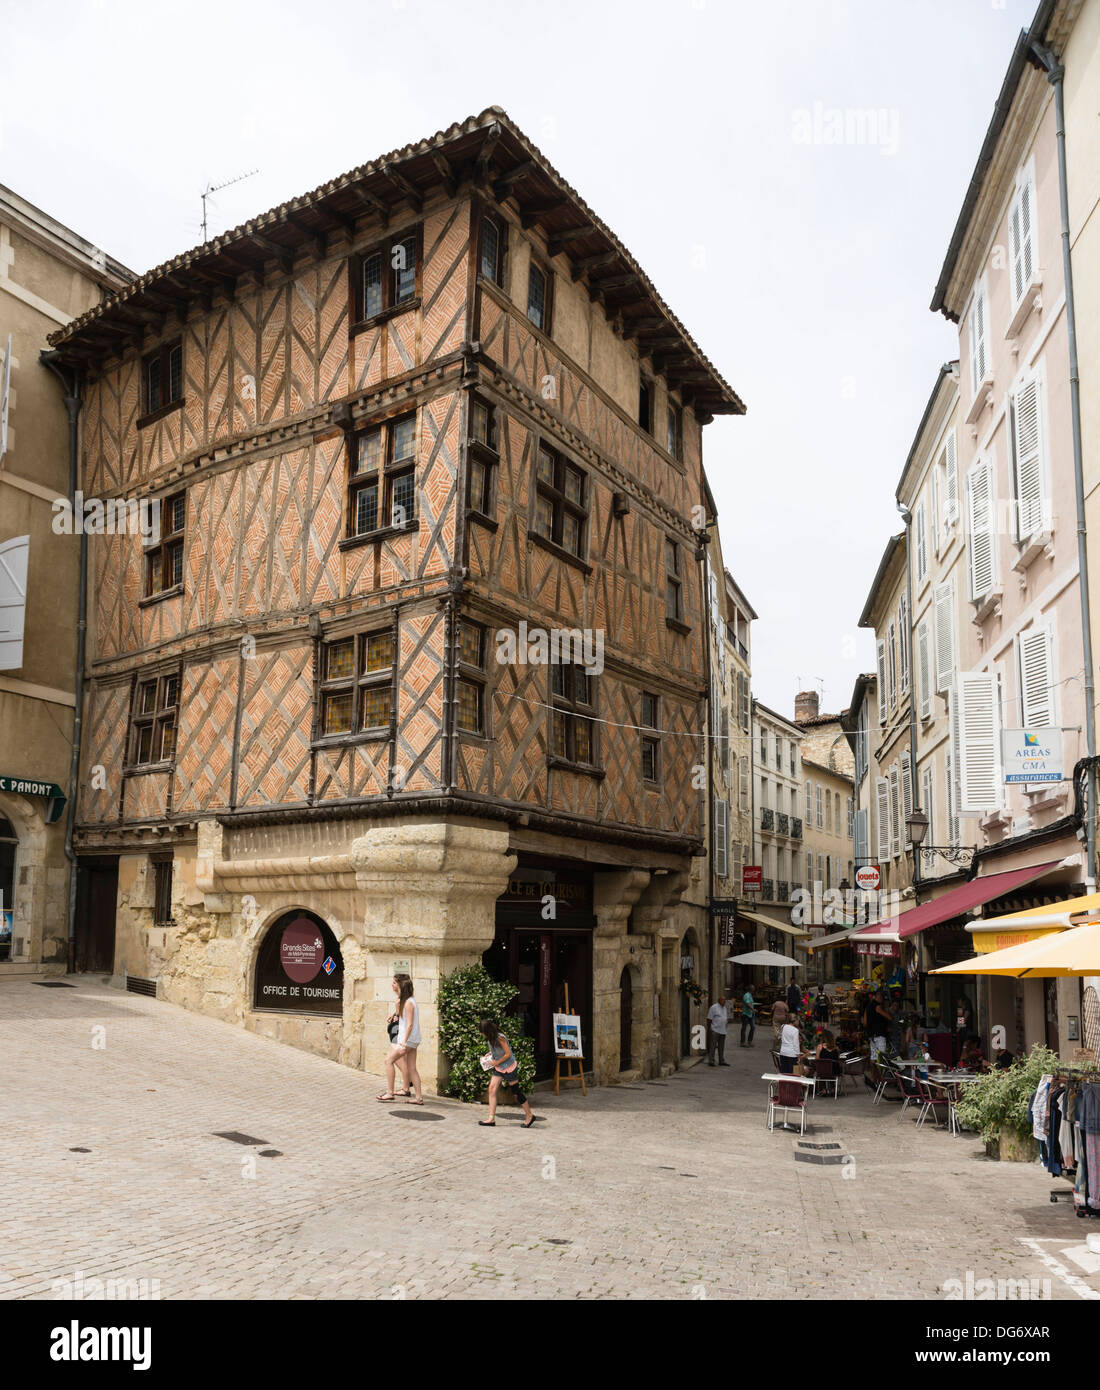 France, Midi-Pyrénées - ville d'Auch. Vieux bâtiment en briques et colombages. Office de tourisme. Banque D'Images